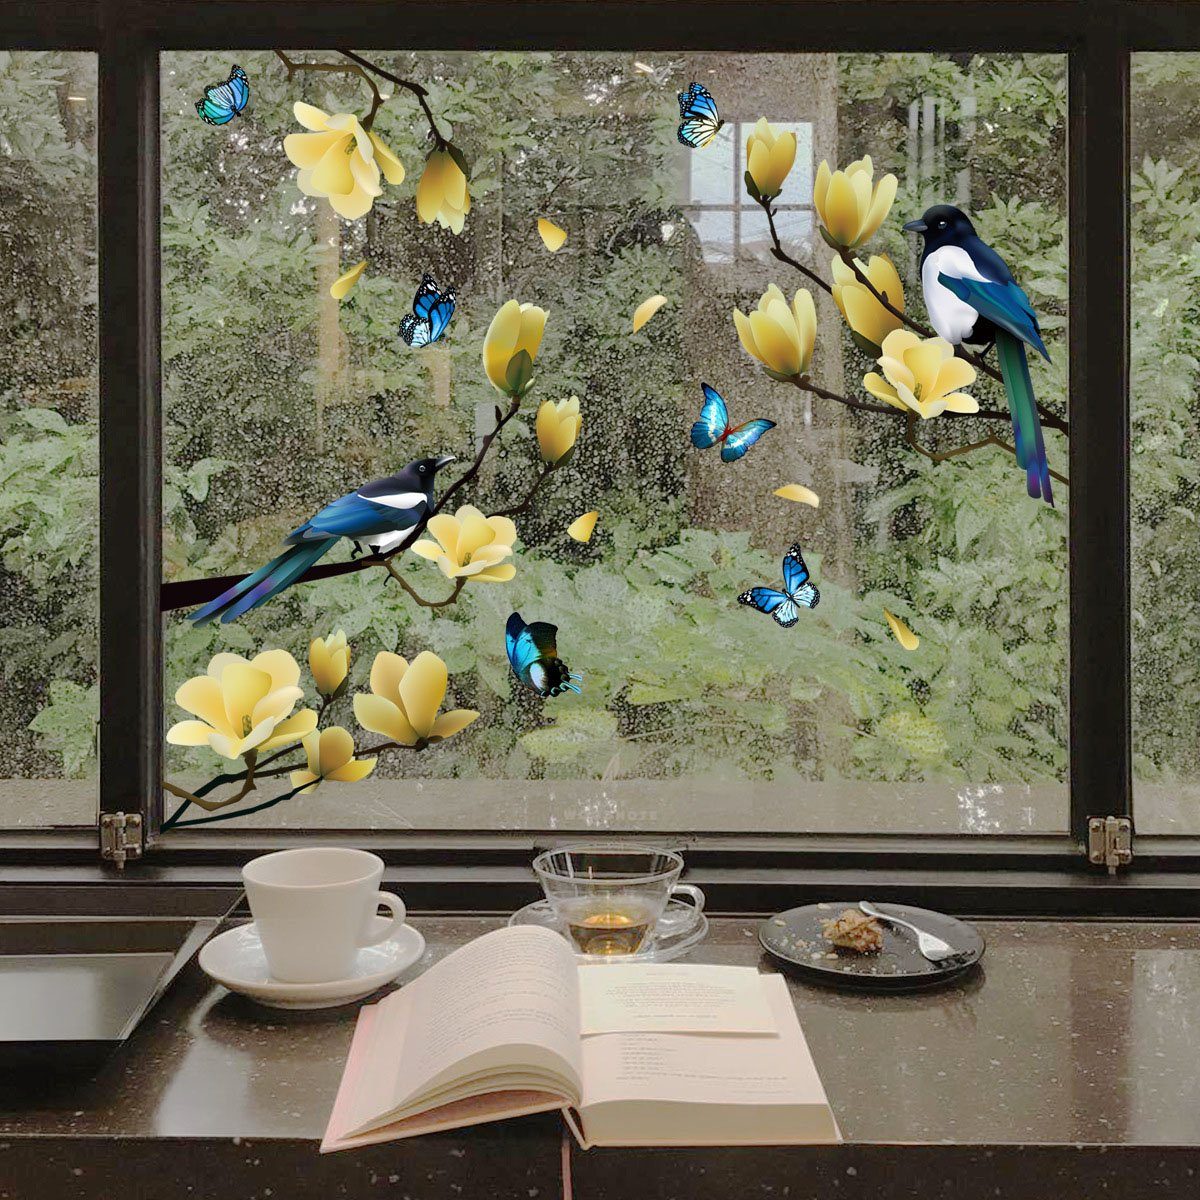 Juoungle Fensterbild 2 Statische set Fensteraufkleber,Frühlingsblume,Vogel,Schmetterling